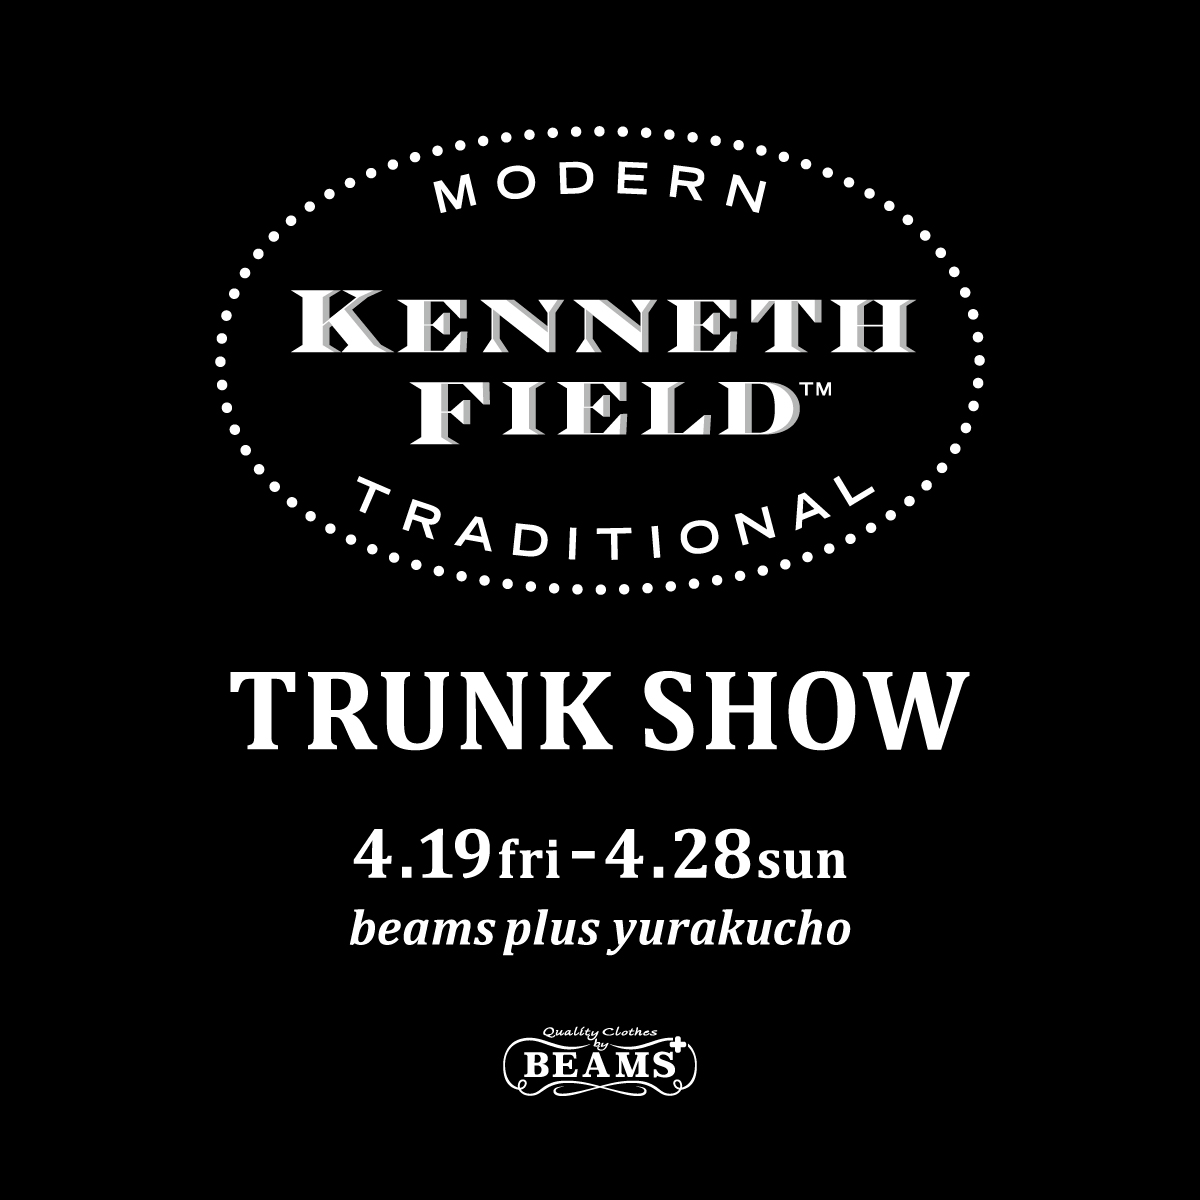 ネクタイのカスタムオーダーも実施する Kenneth Field のトランクショーを開催 Beams